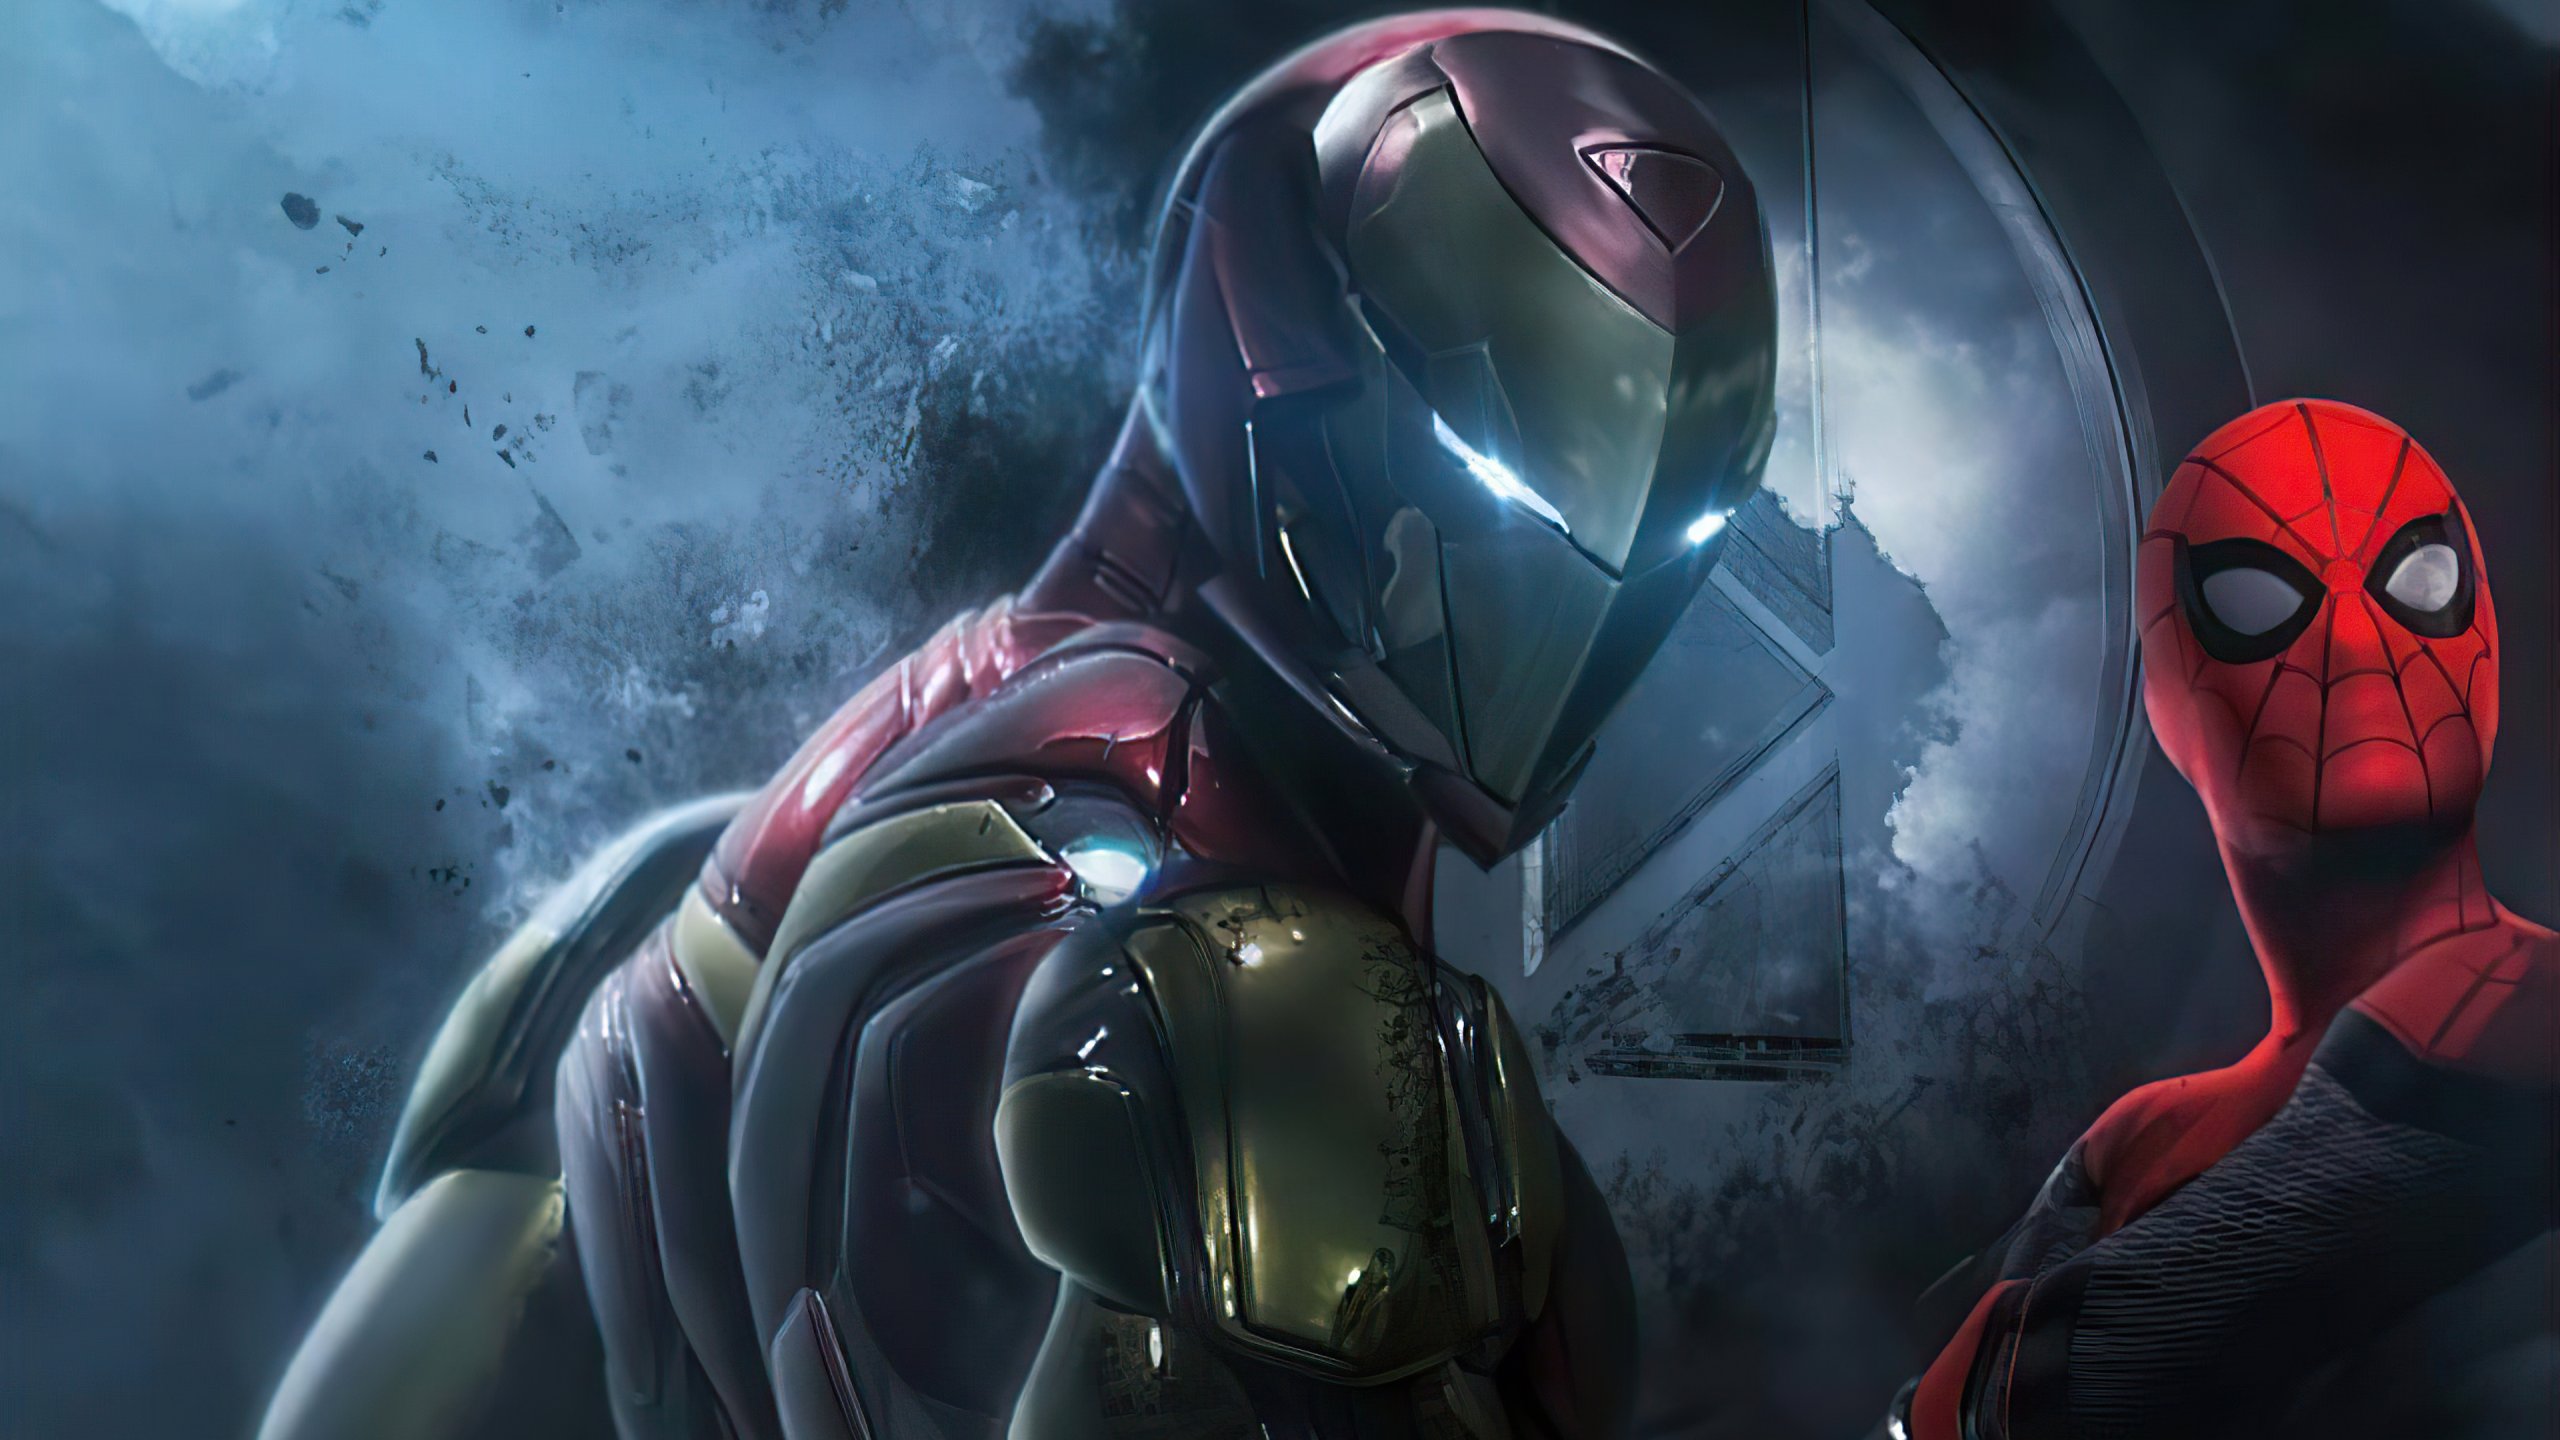 Iron Man and Spiderman Wallpaper 4k Ultra HD ID:6769